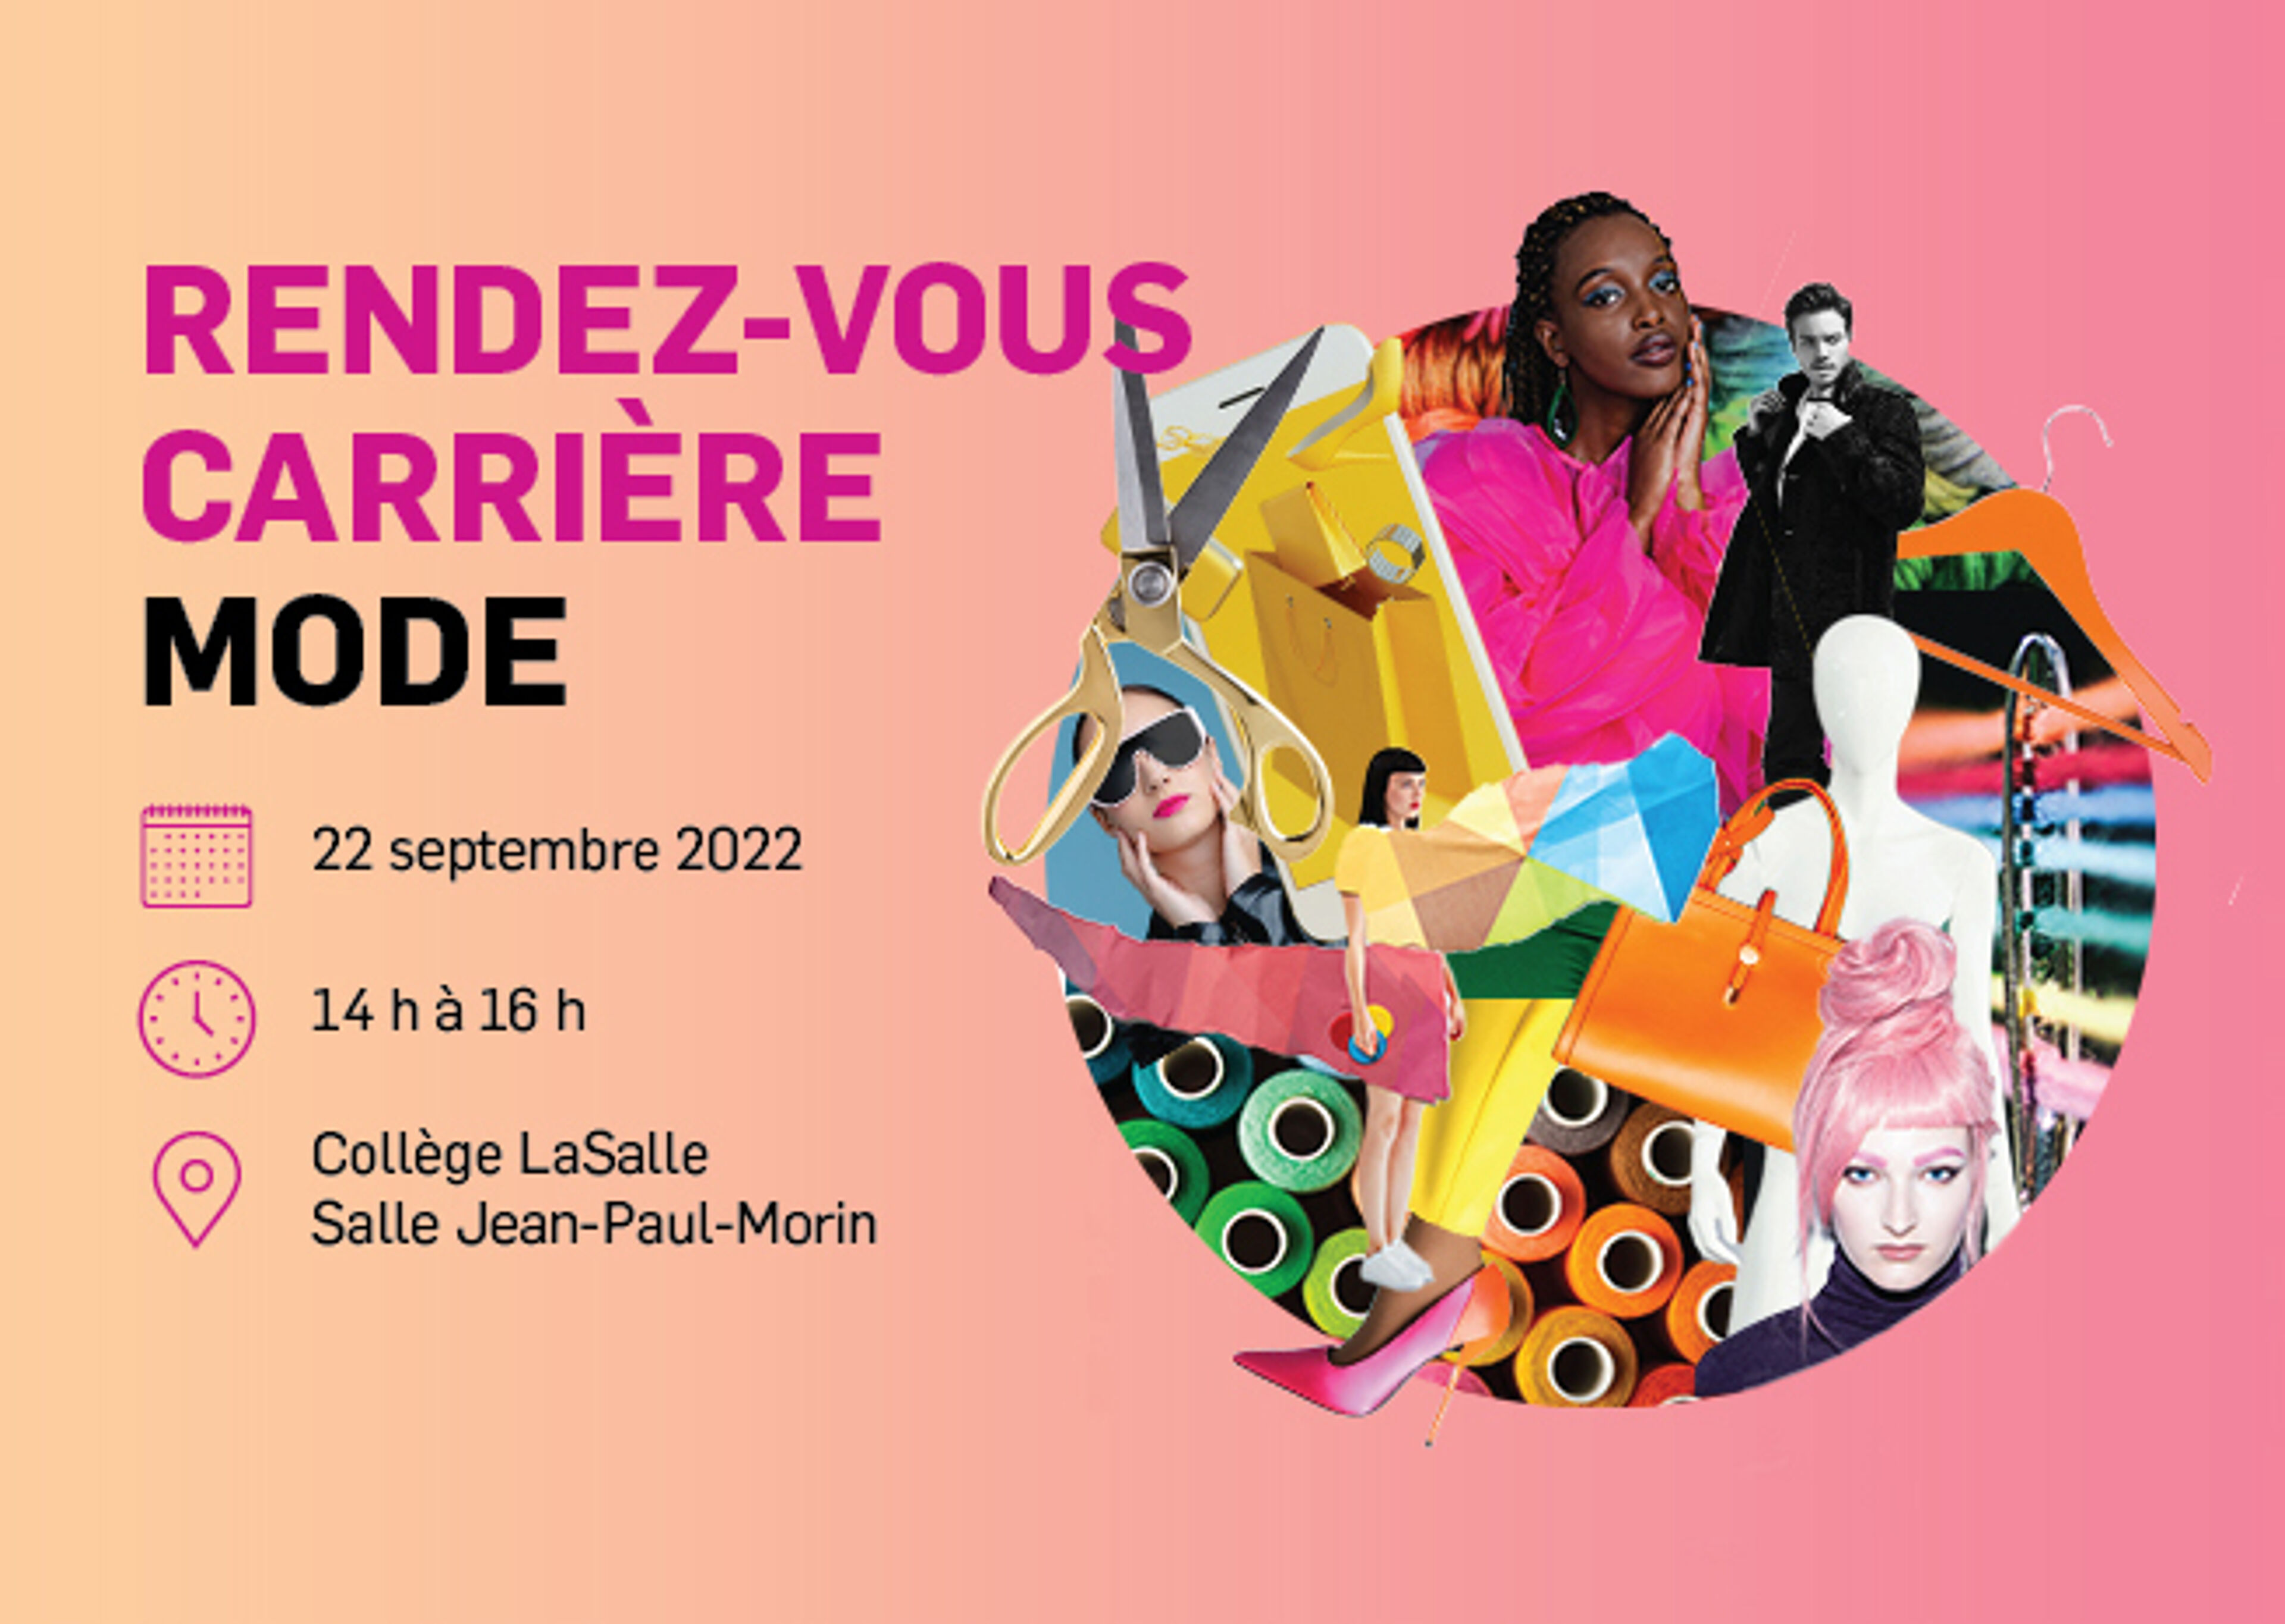 Prospectus vibrant pour un événement de carrière de mode le 22 septembre 2022, au Collège LaSalle.